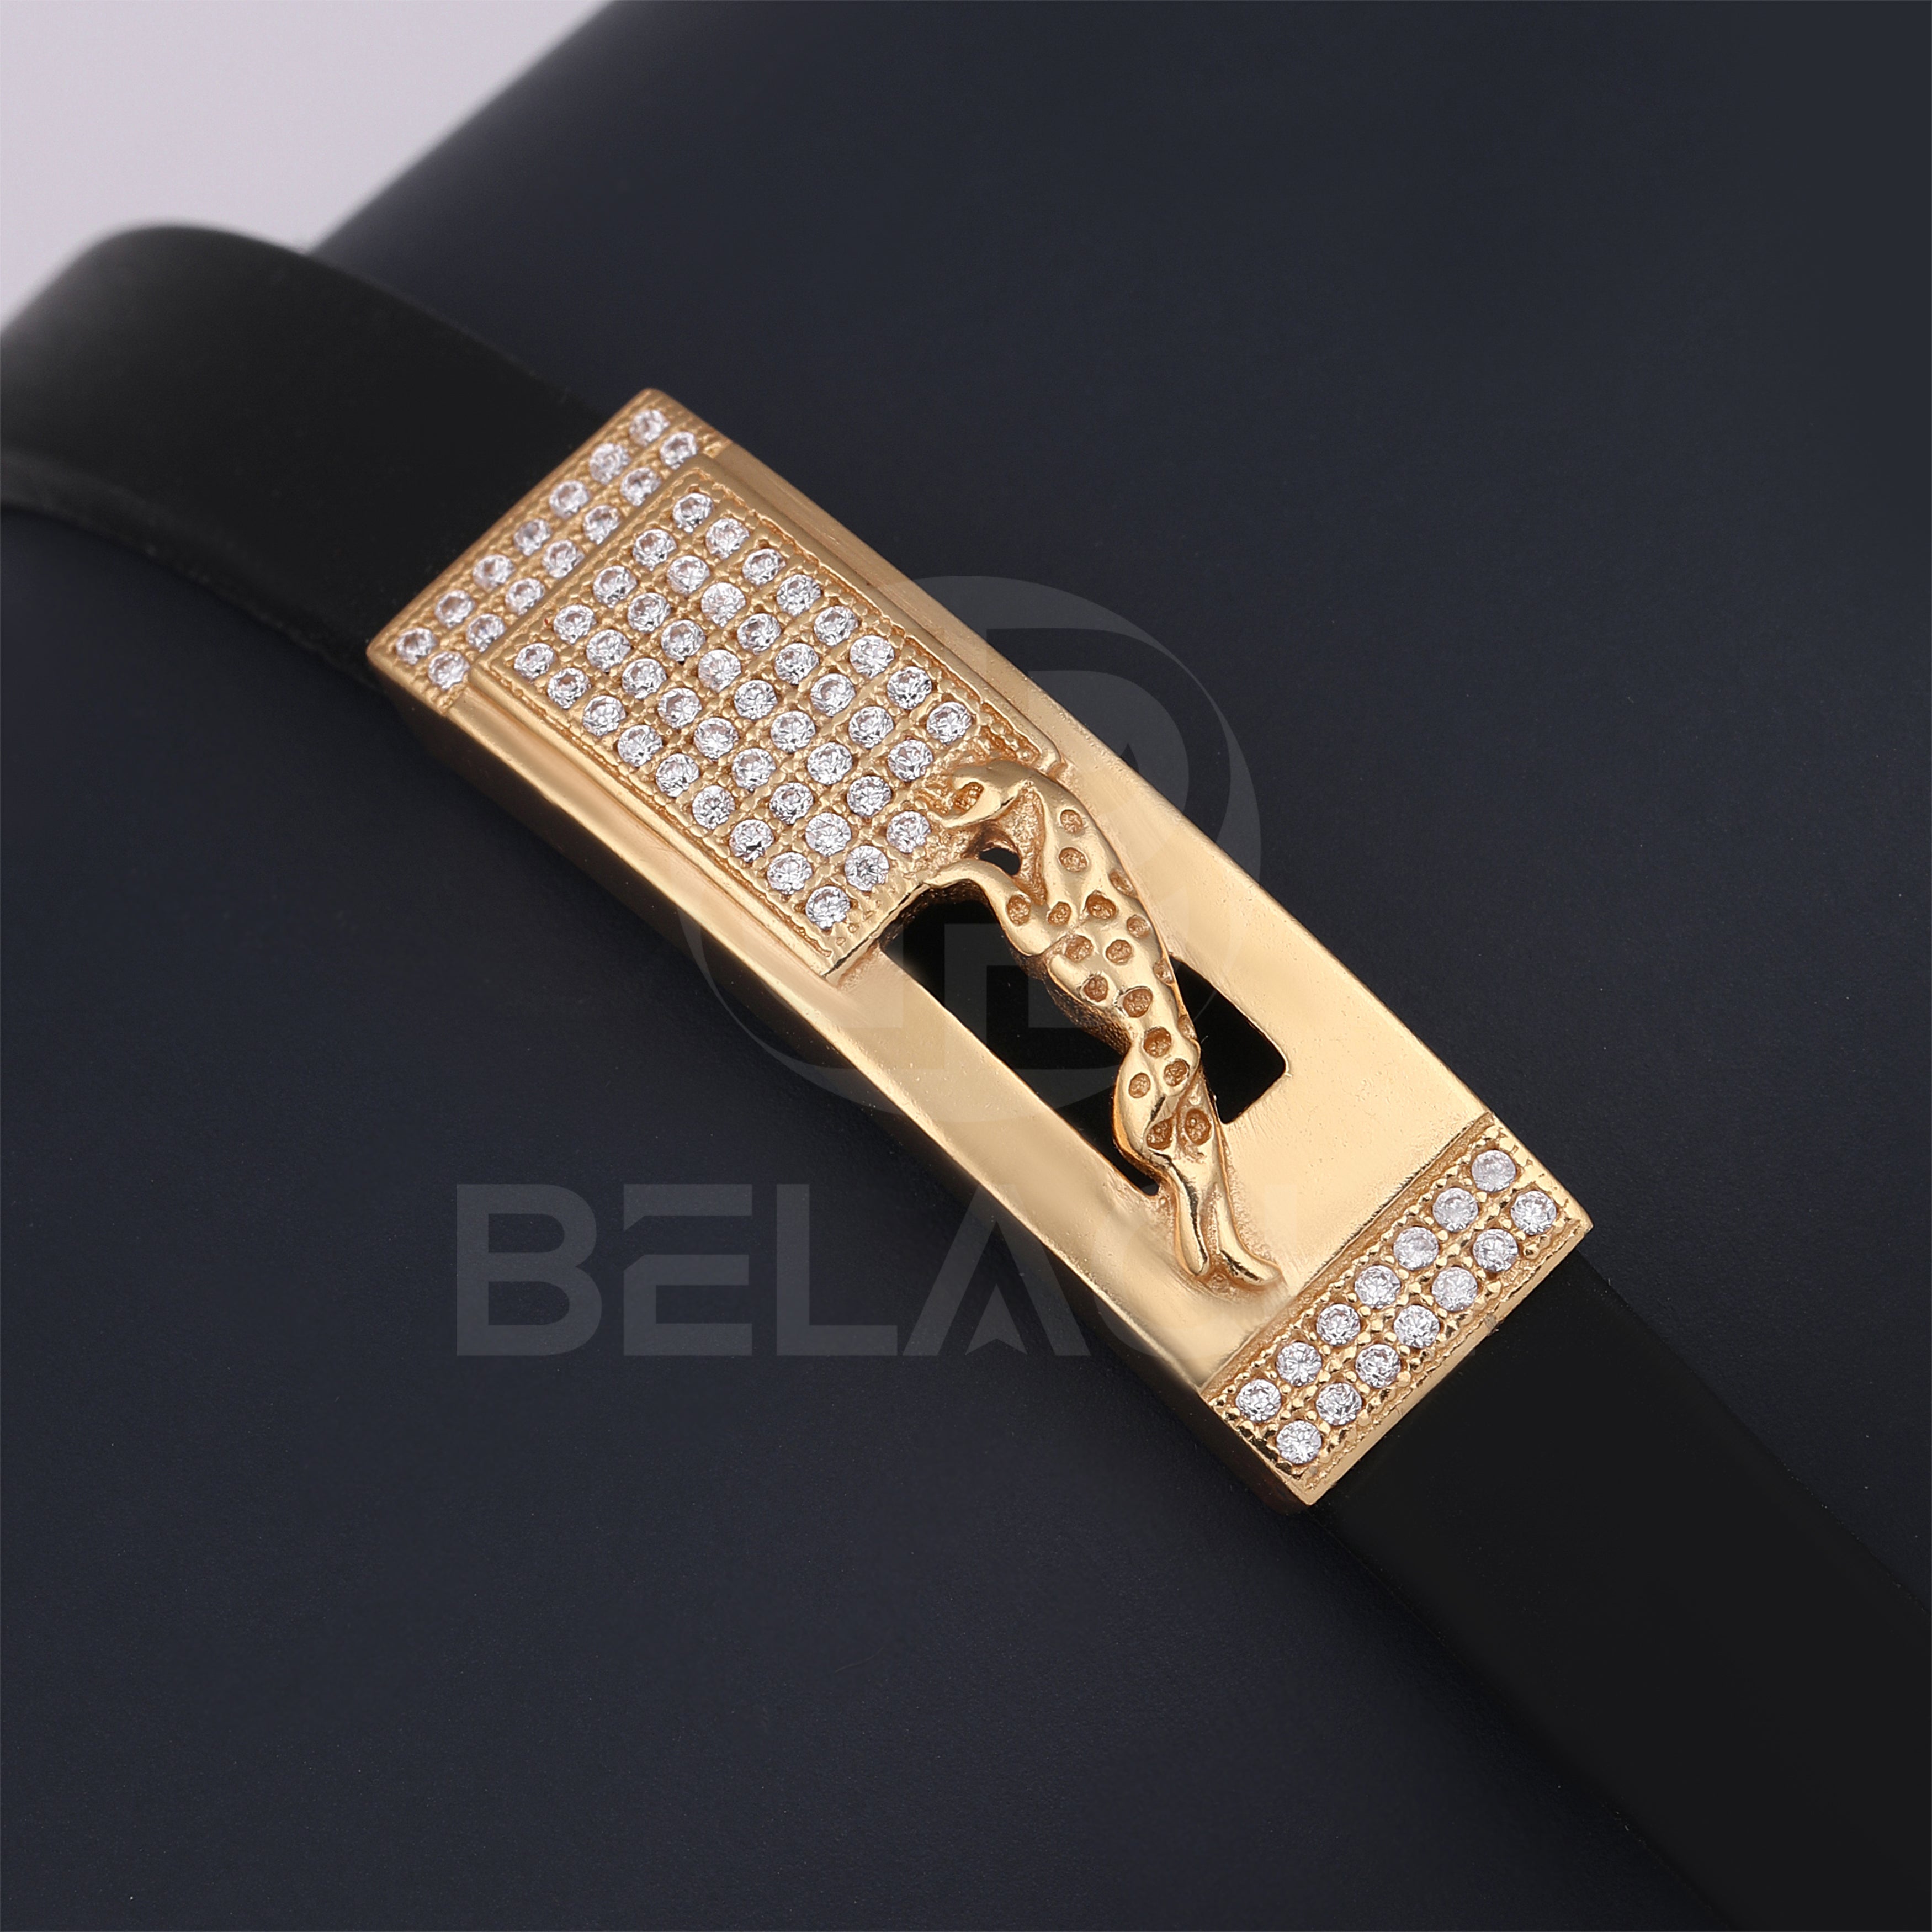 Black Jaguar & Crown Bracelet